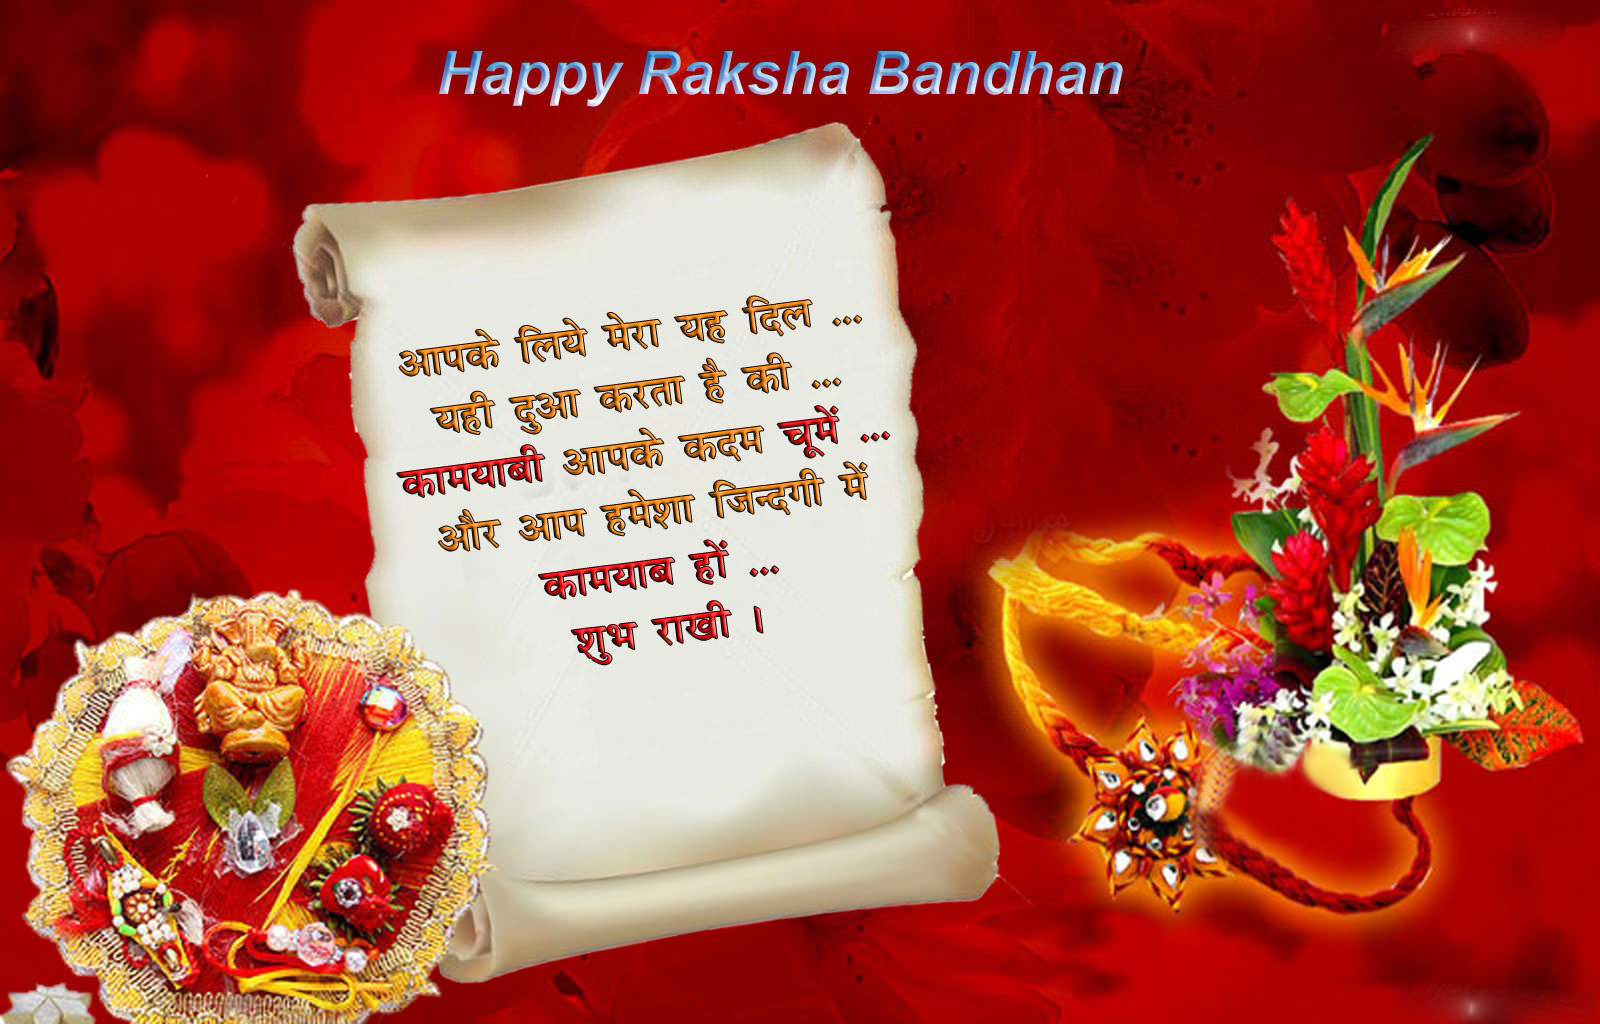 List Of Raksha Bandhan Songs Free Download In Hindi - Happy Raksha Bandhan Image Download - HD Wallpaper 